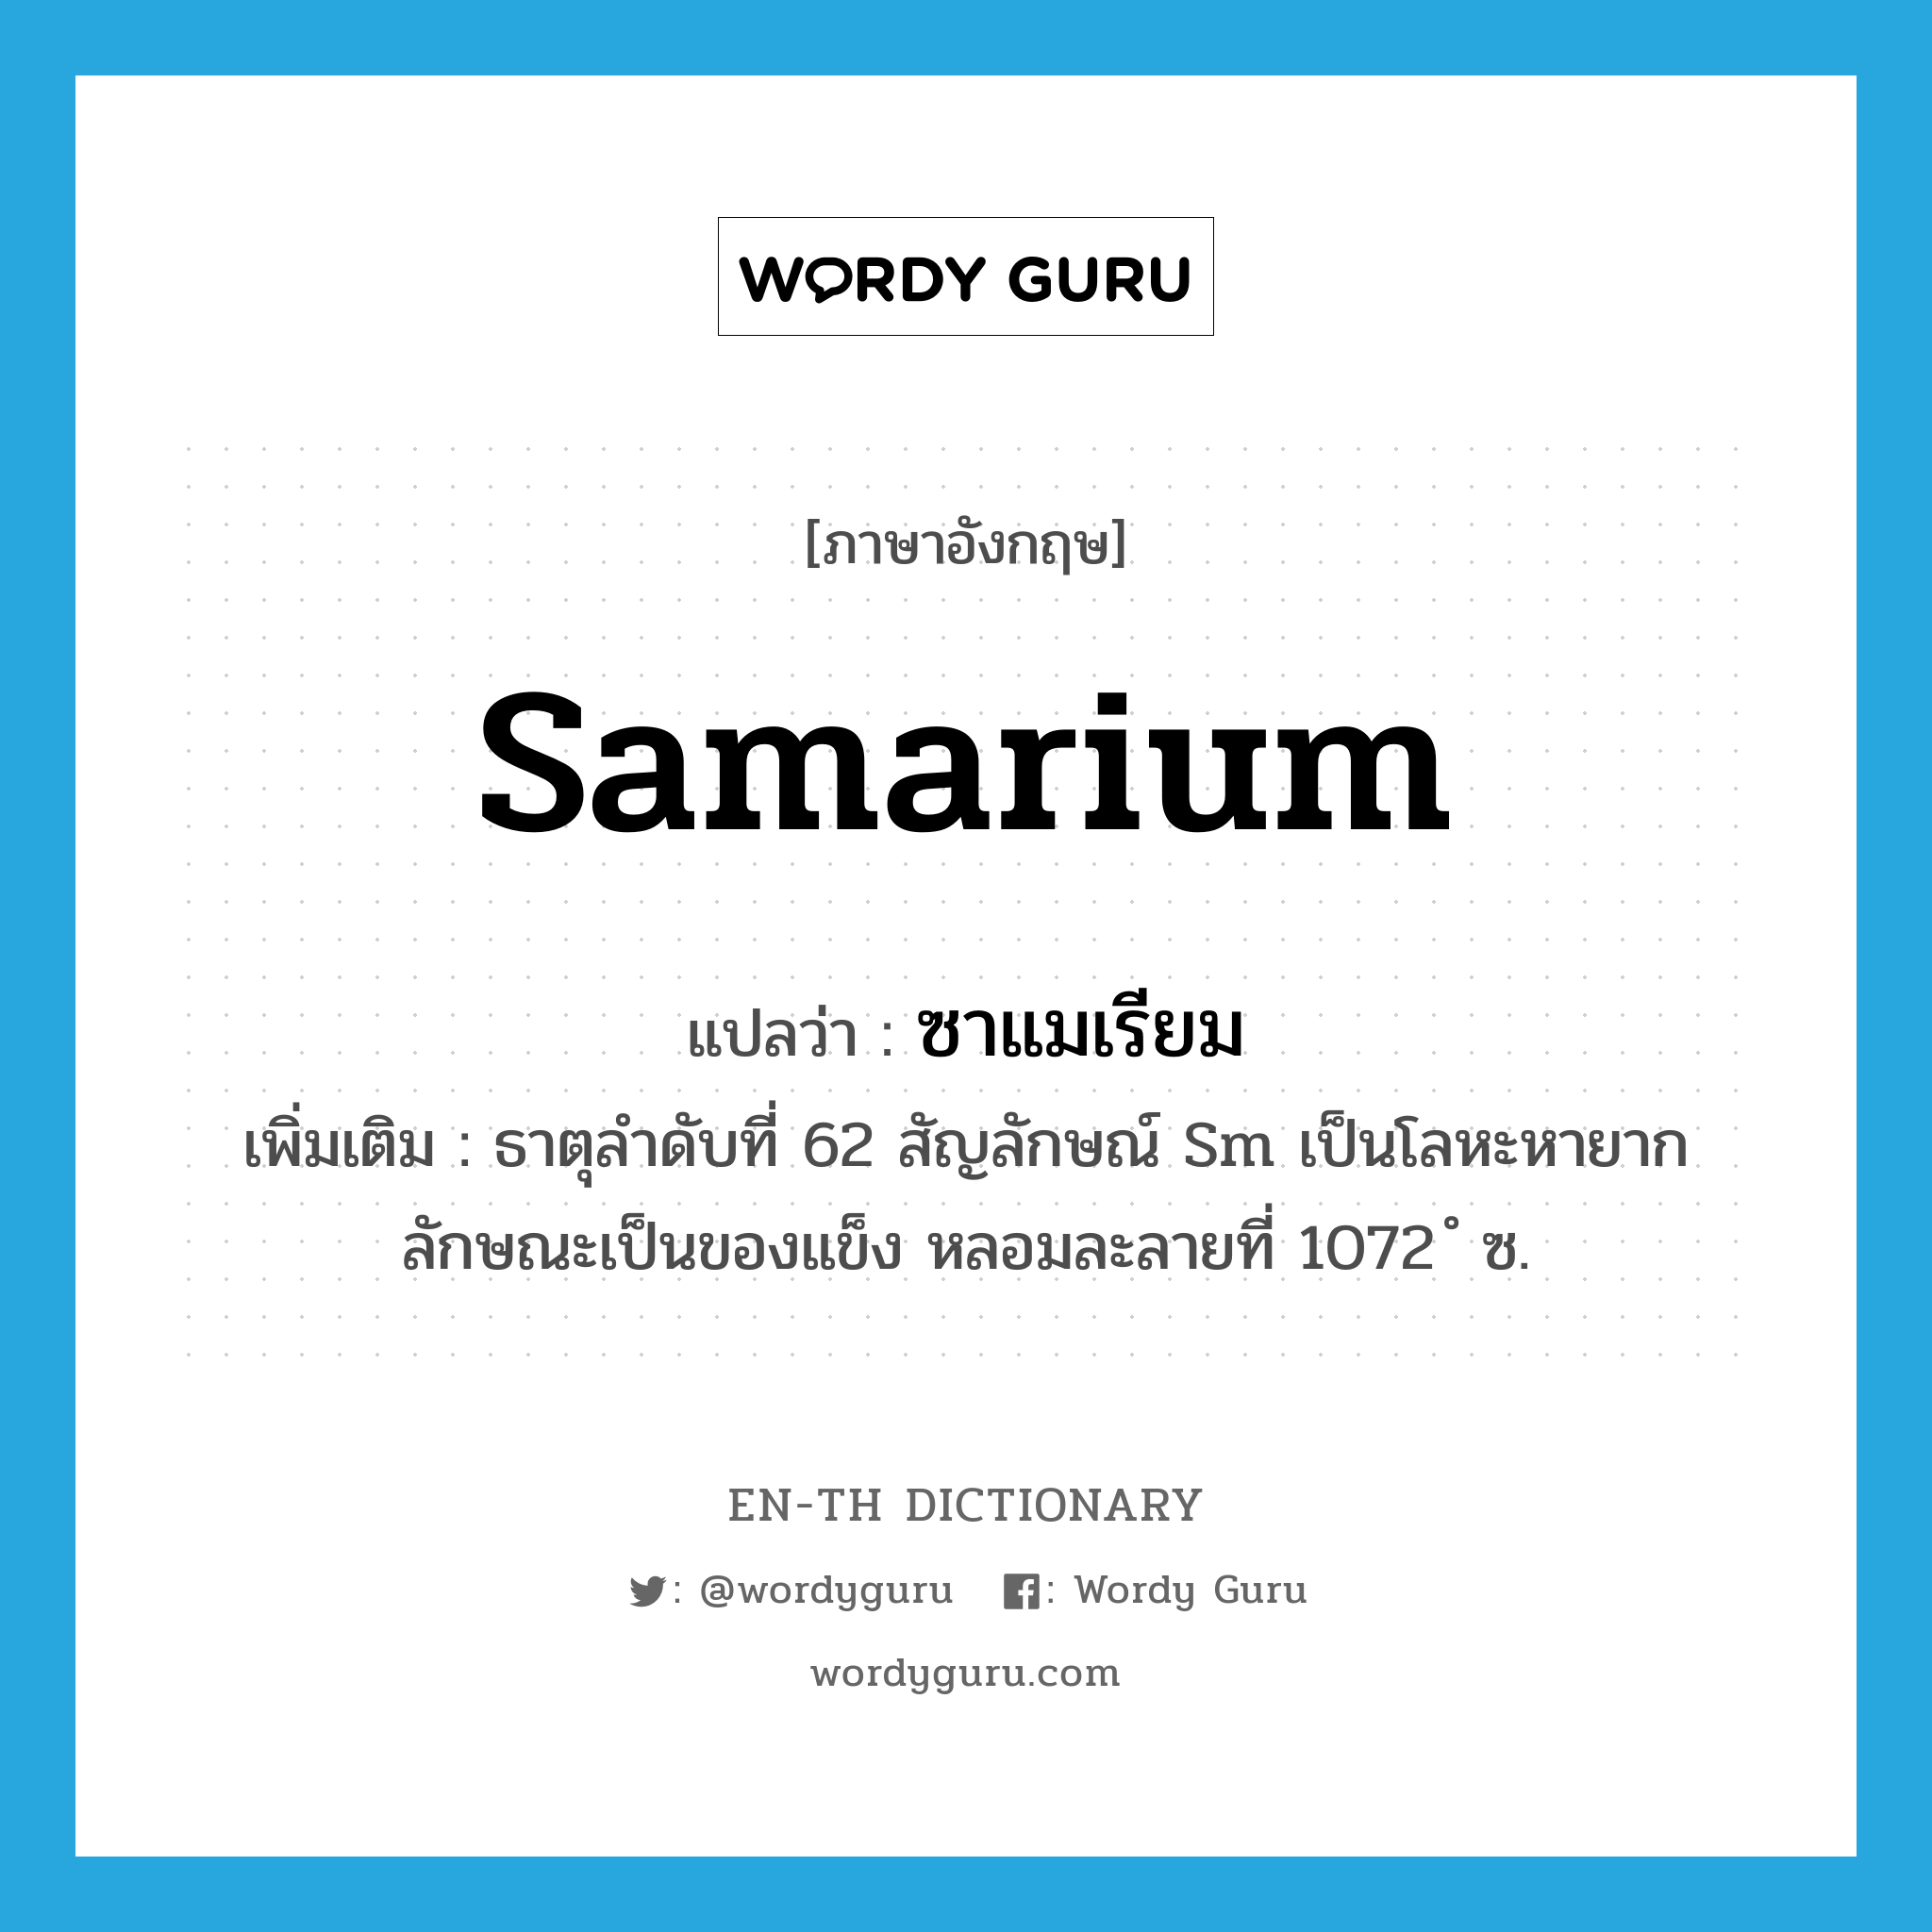 ซาแมเรียม ภาษาอังกฤษ?, คำศัพท์ภาษาอังกฤษ ซาแมเรียม แปลว่า samarium ประเภท N เพิ่มเติม ธาตุลำดับที่ 62 สัญลักษณ์ Sm เป็นโลหะหายาก ลักษณะเป็นของแข็ง หลอมละลายที่ 1072 ํ ซ. หมวด N